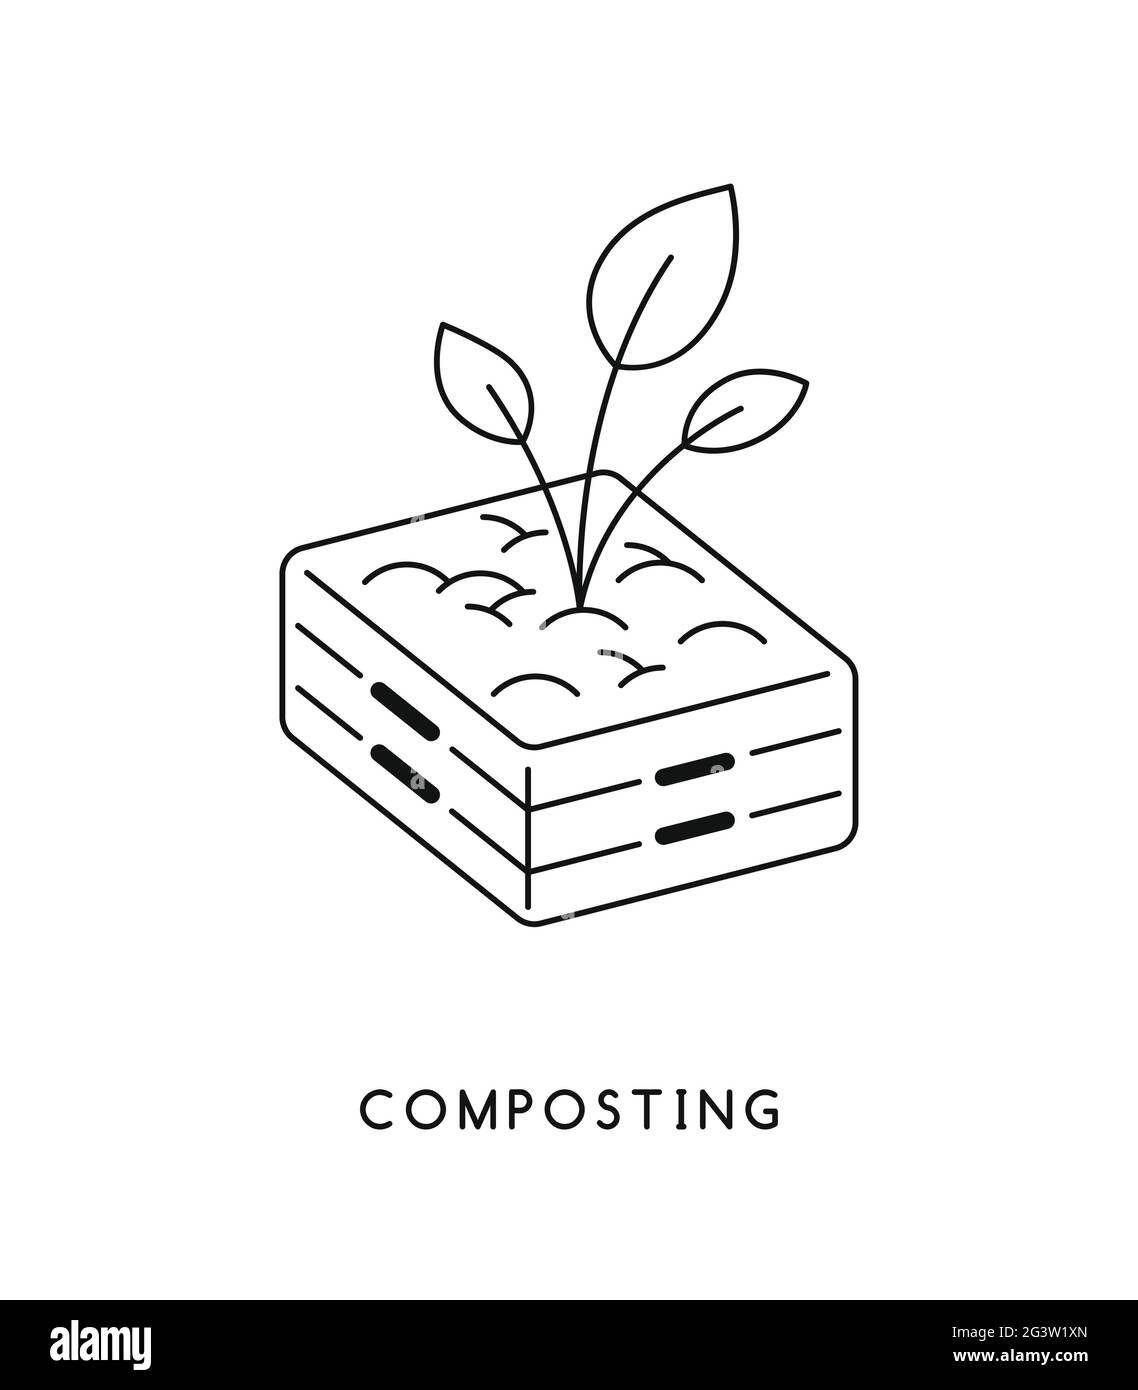 Compost at home Imágenes de stock en blanco y negro - Alamy